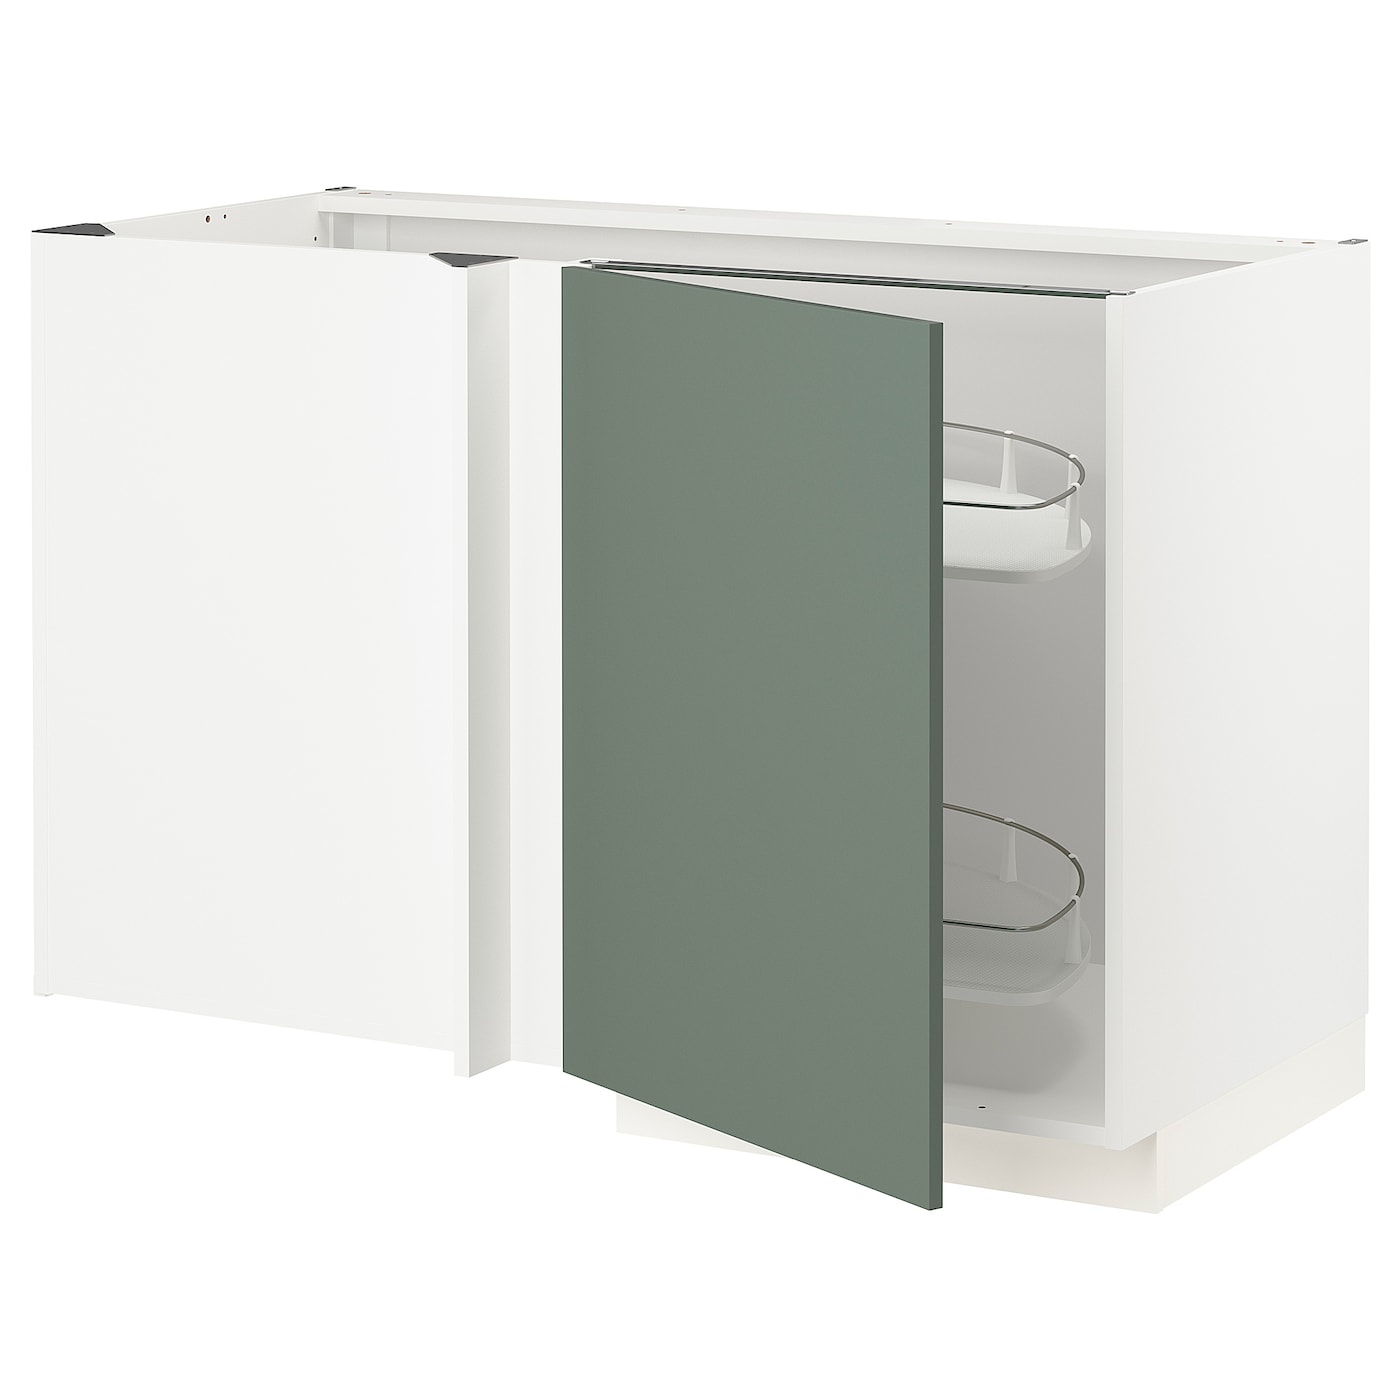 Угловой шкаф-тумба с высокой полкой - IKEA METOD/МЕТОД ИКЕА, 88х67,5х127,5 см, белый/темно-зеленый